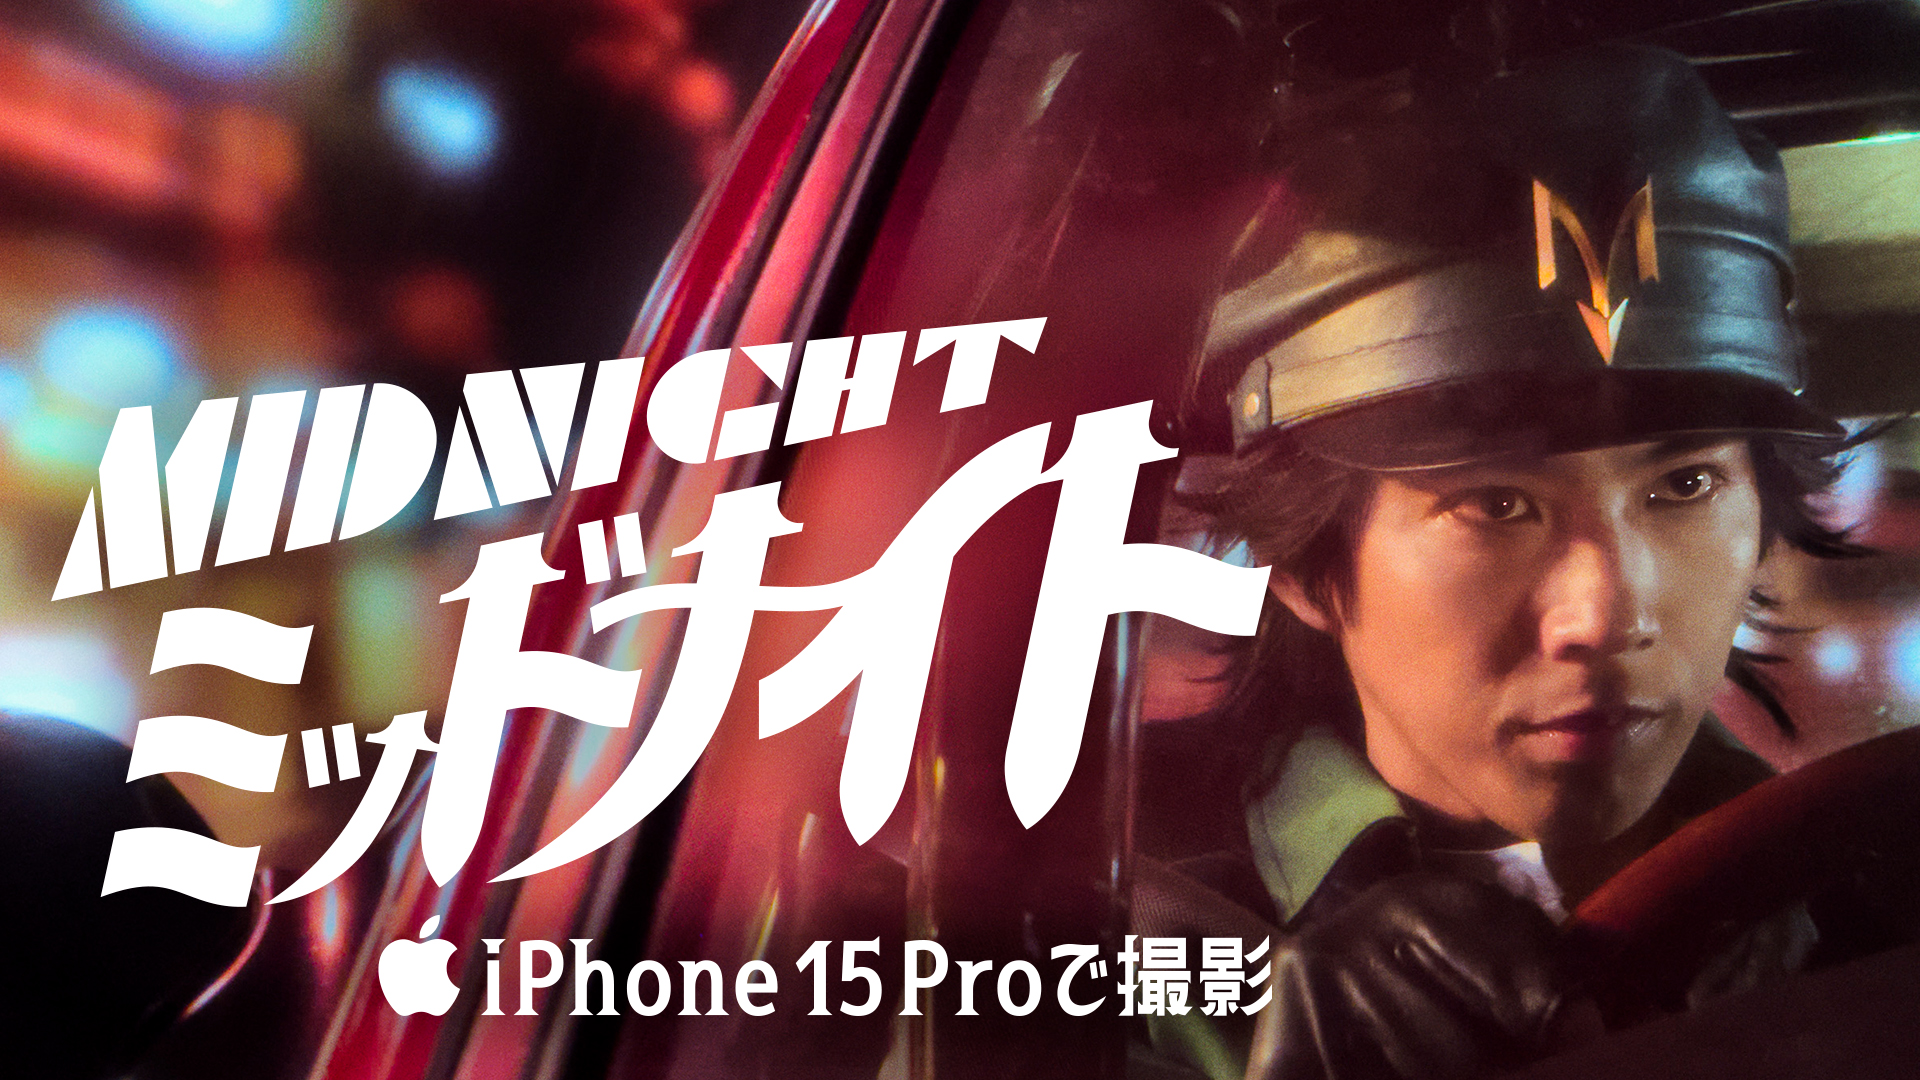 アップル、手塚治虫原作『ミッドナイト』を三池崇史監督、iPhone 15 Proのみで撮影して公開